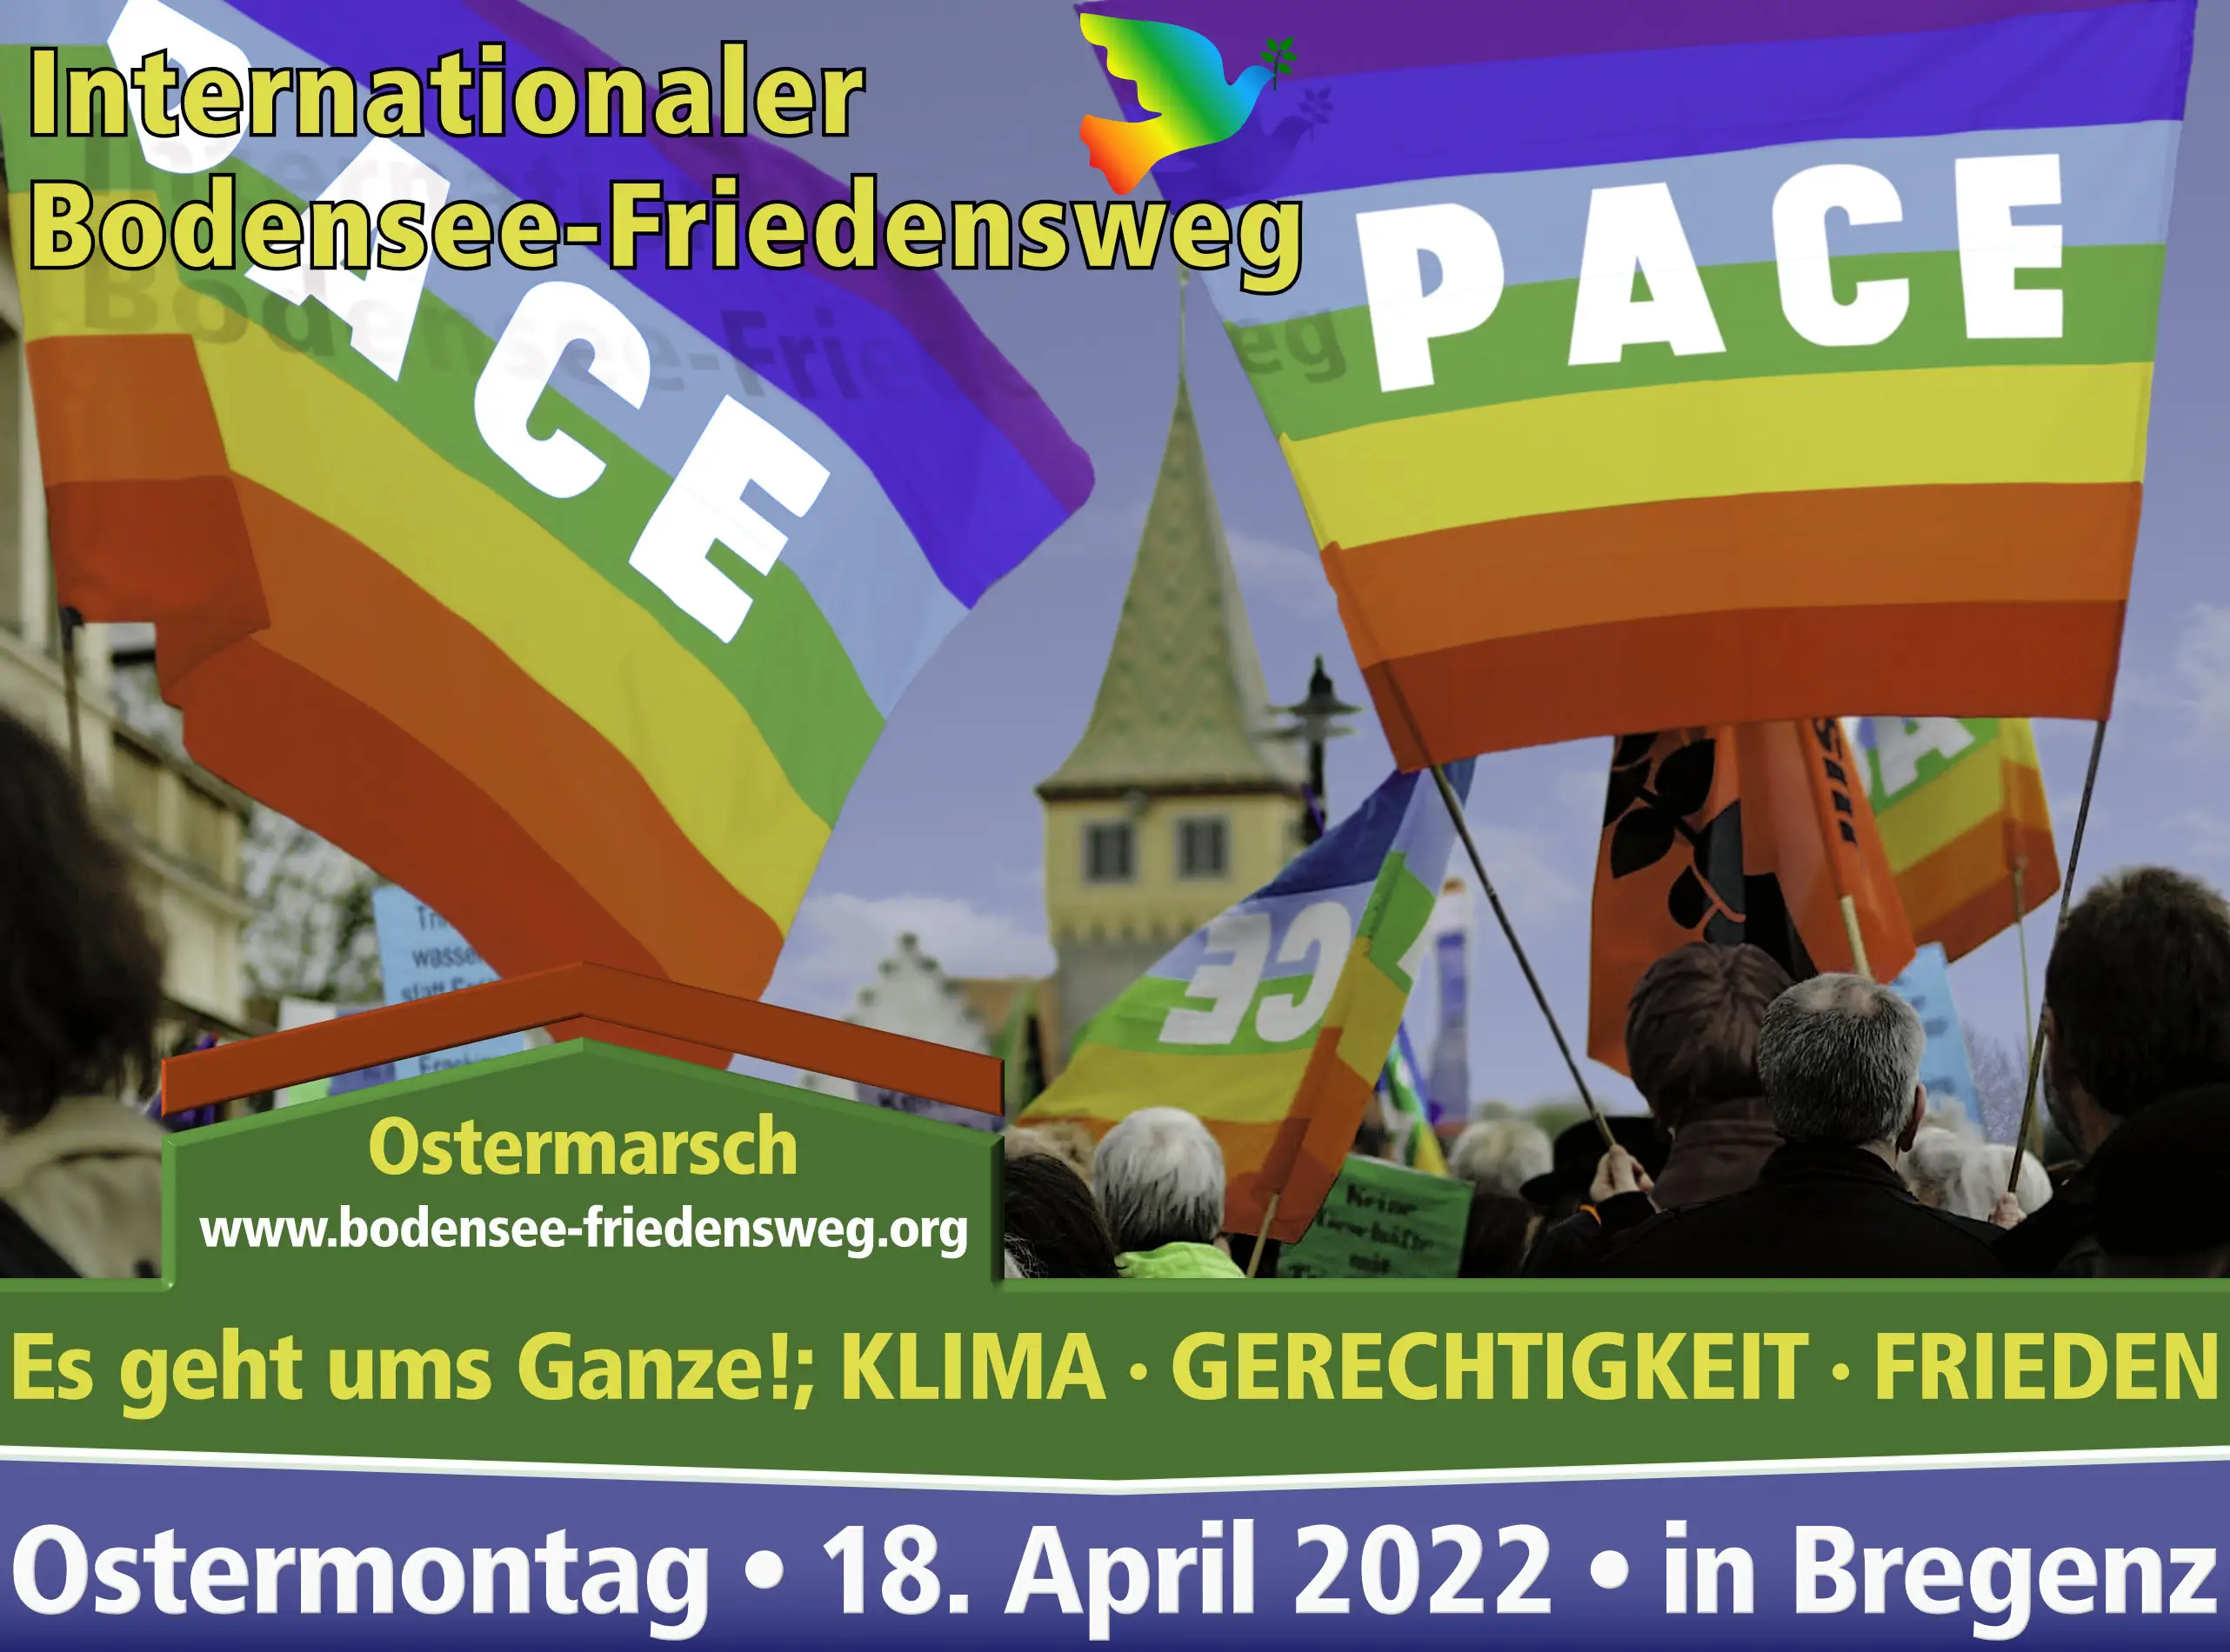 Bodensee Friedensweg 2022, Ostermarsch, Inernationaler, Klima, Gerechtigkeit. Frieden. Es geht ums Ganze! Bregenz